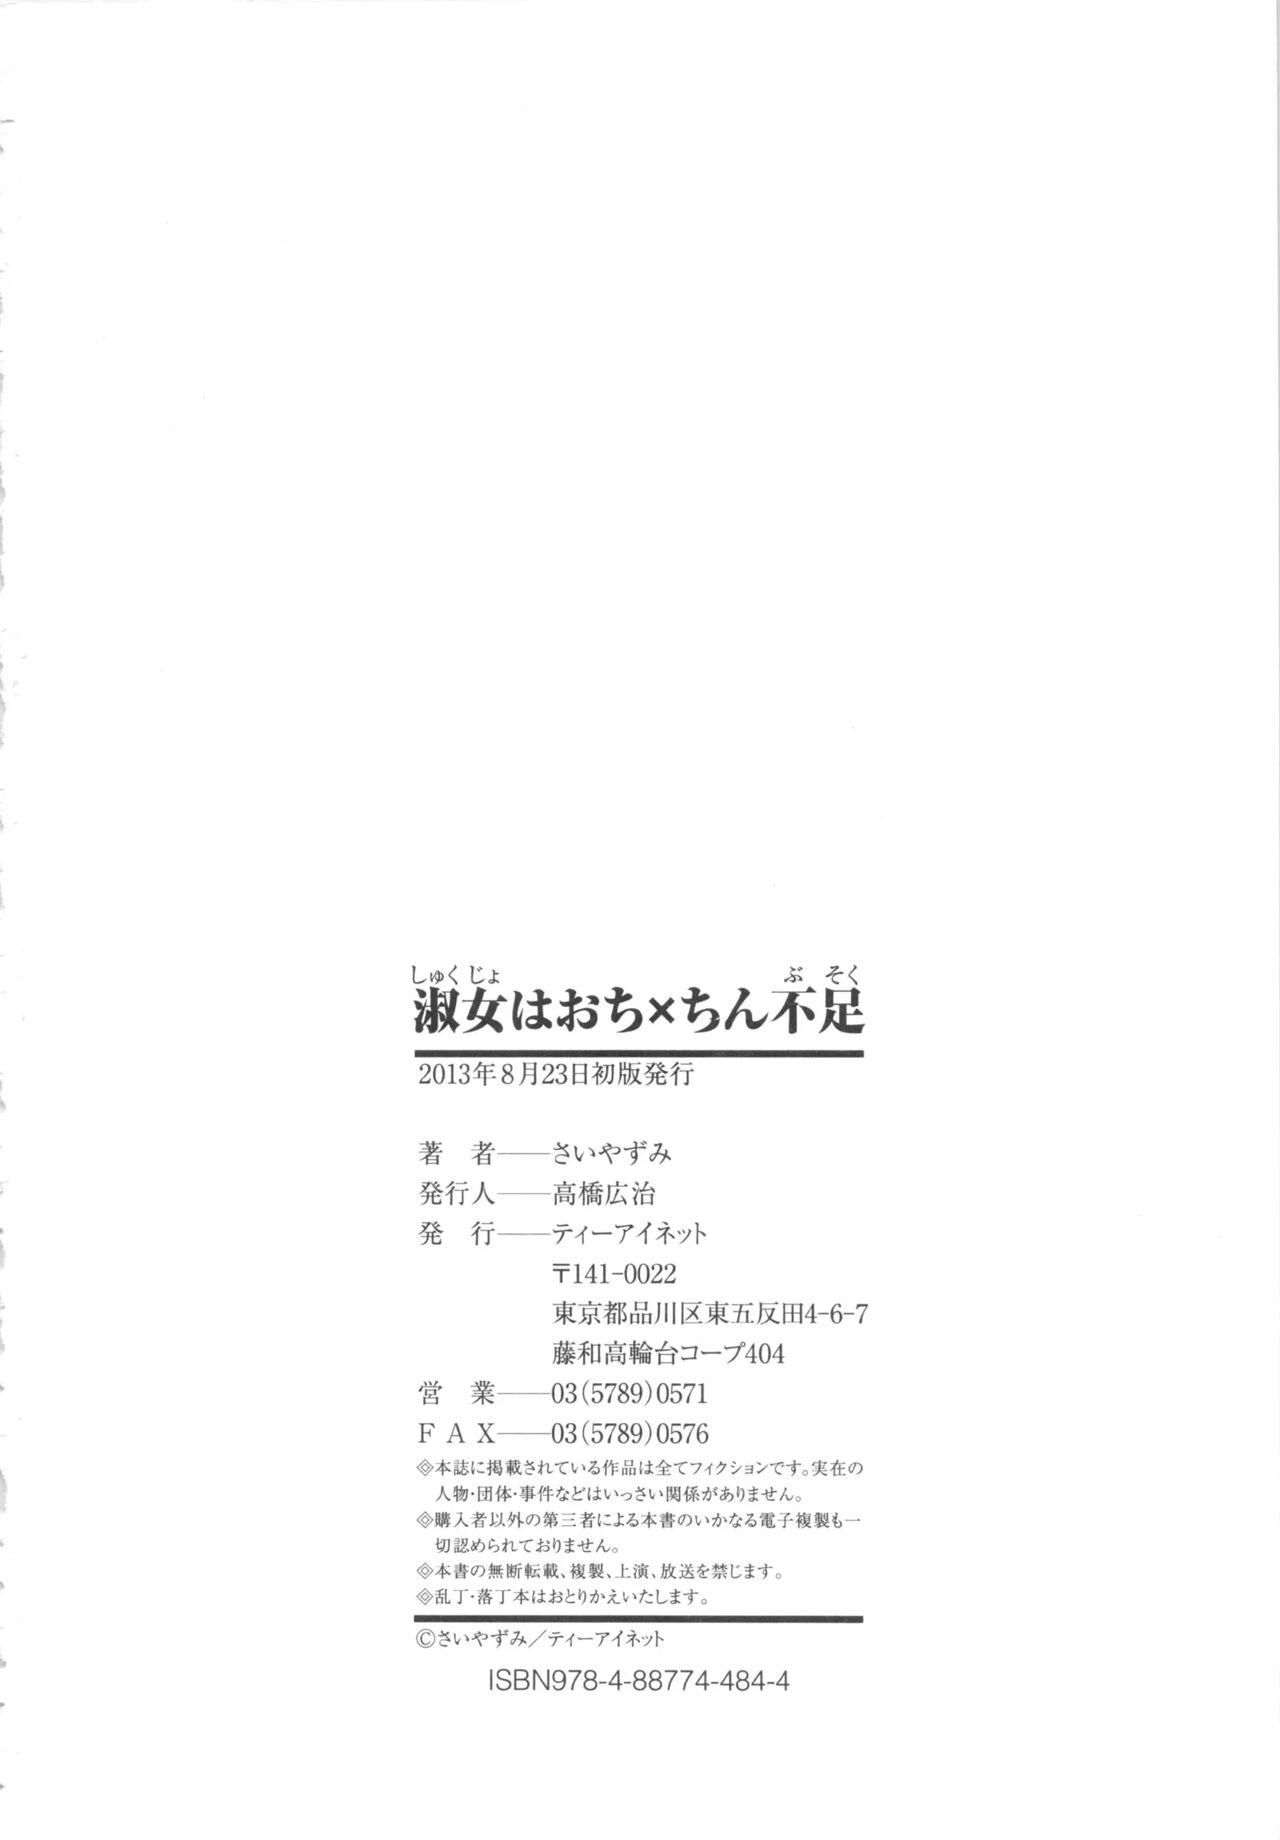 Chaturbate Shukujo wa Ochinchin Busoku Anale - Page 215